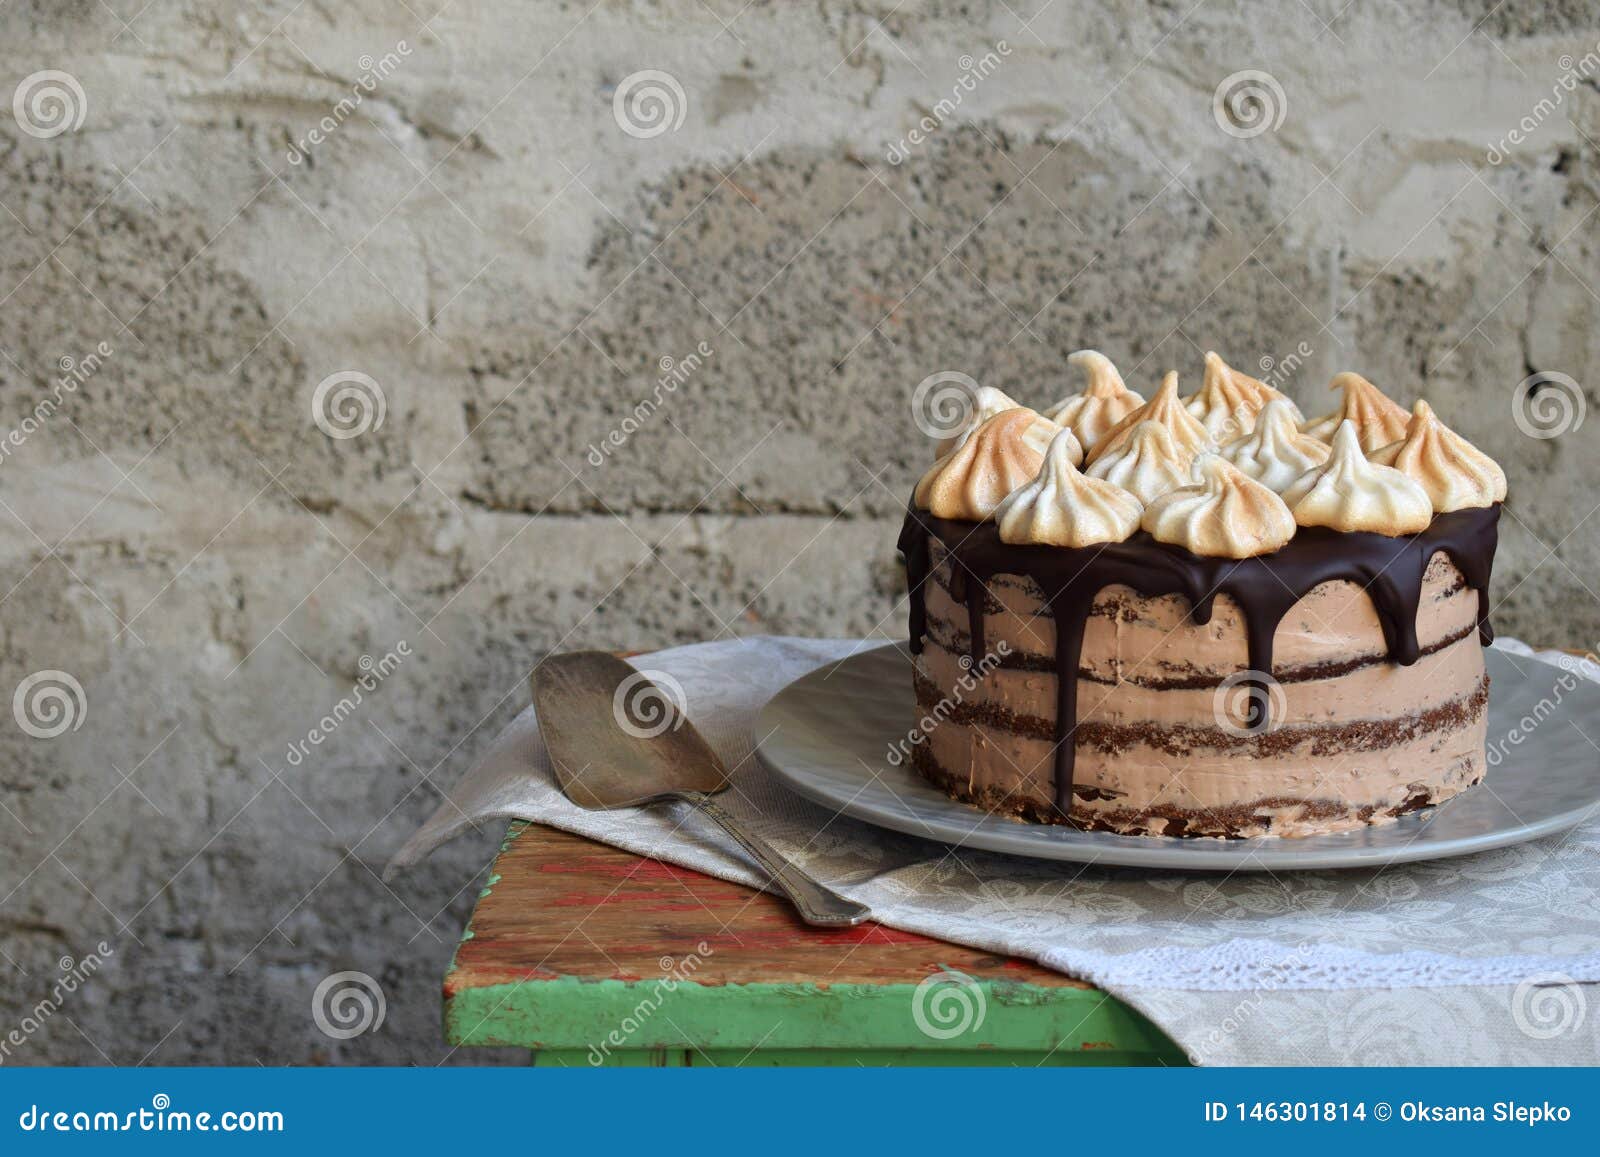 Chocolate Cake Decorated with Rosettes of Meringue Cream ...